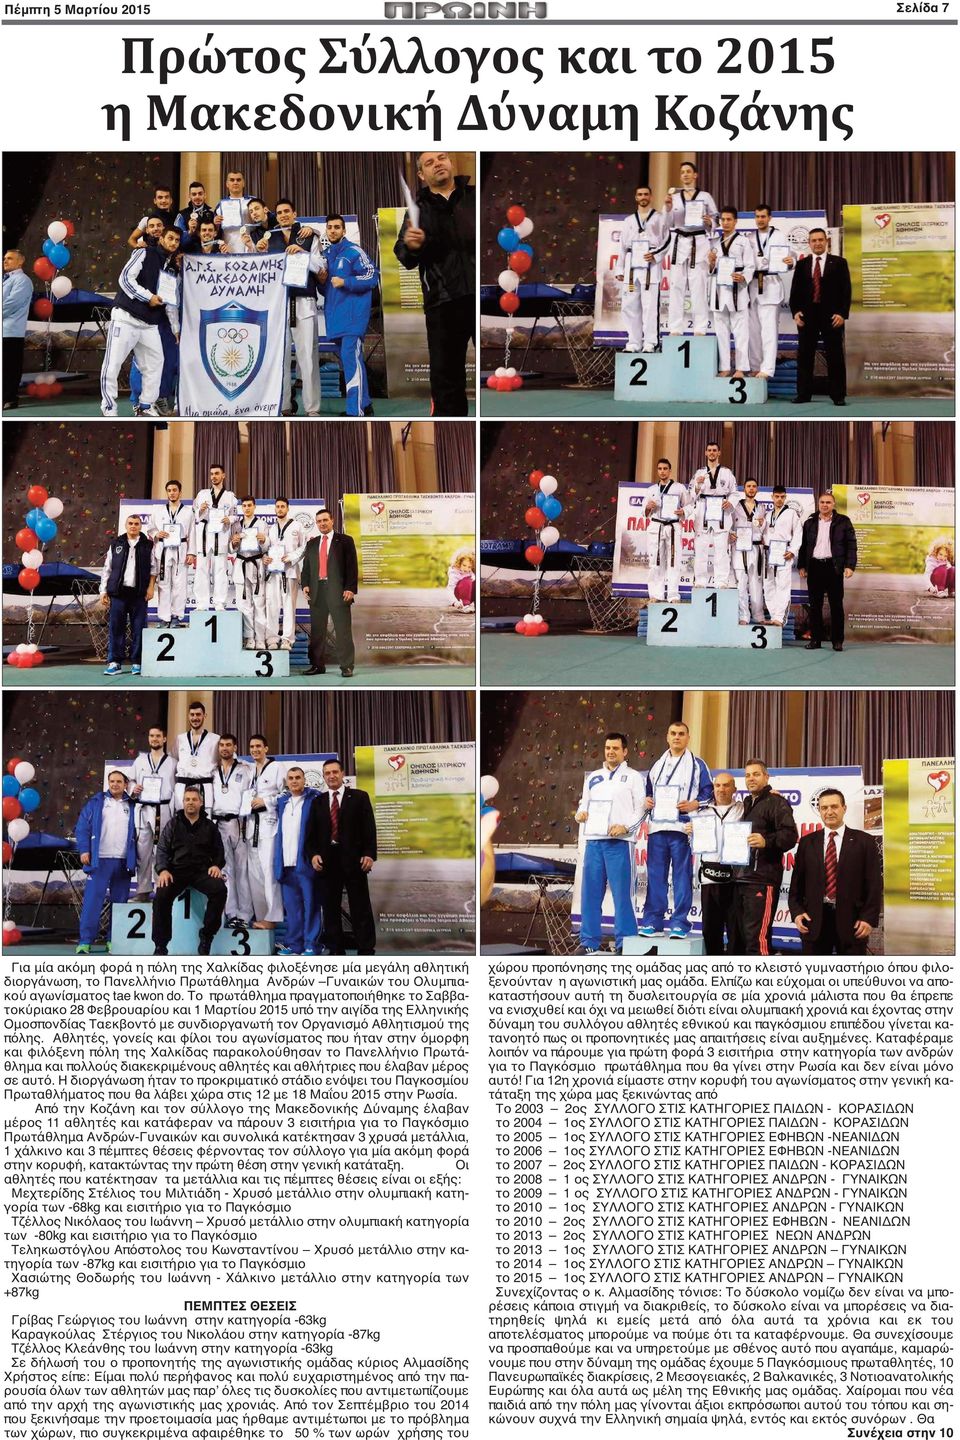 Tο πρωτάθλημα πραγματοποιήθηκε το Σαββατοκύριακο 28 Φεβρουαρίου και 1 Μαρτίου 2015 υπό την αιγίδα της Ελληνικής Ομοσπονδίας Ταεκβοντό με συνδιοργανωτή τον Οργανισμό Αθλητισμού της πόλης.